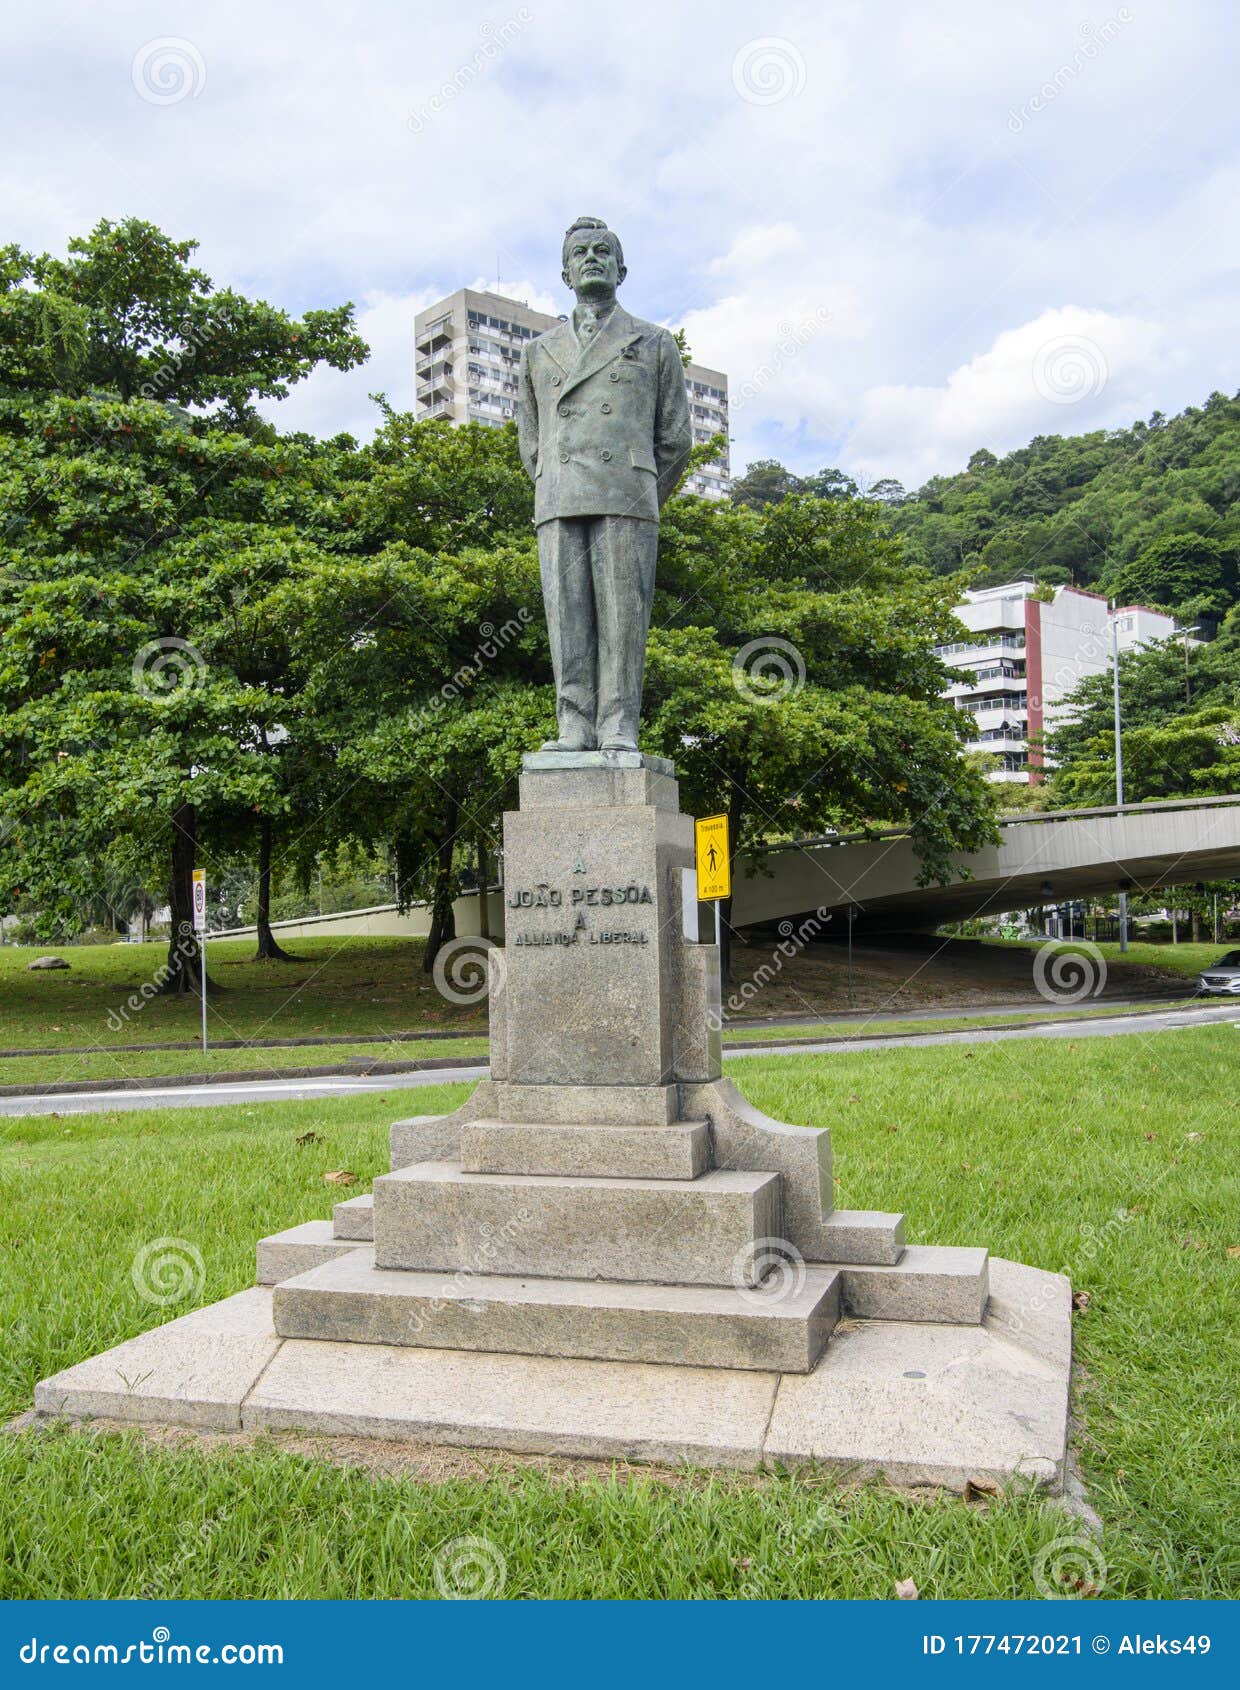 https://thumbs.dreamstime.com/z/avenue-epitacio-pessoa-monument-to-joao-allianca-liberal-cars-pedestrians-move-rio-de-janeiro-brasil-february-rodrigo-177472021.jpg